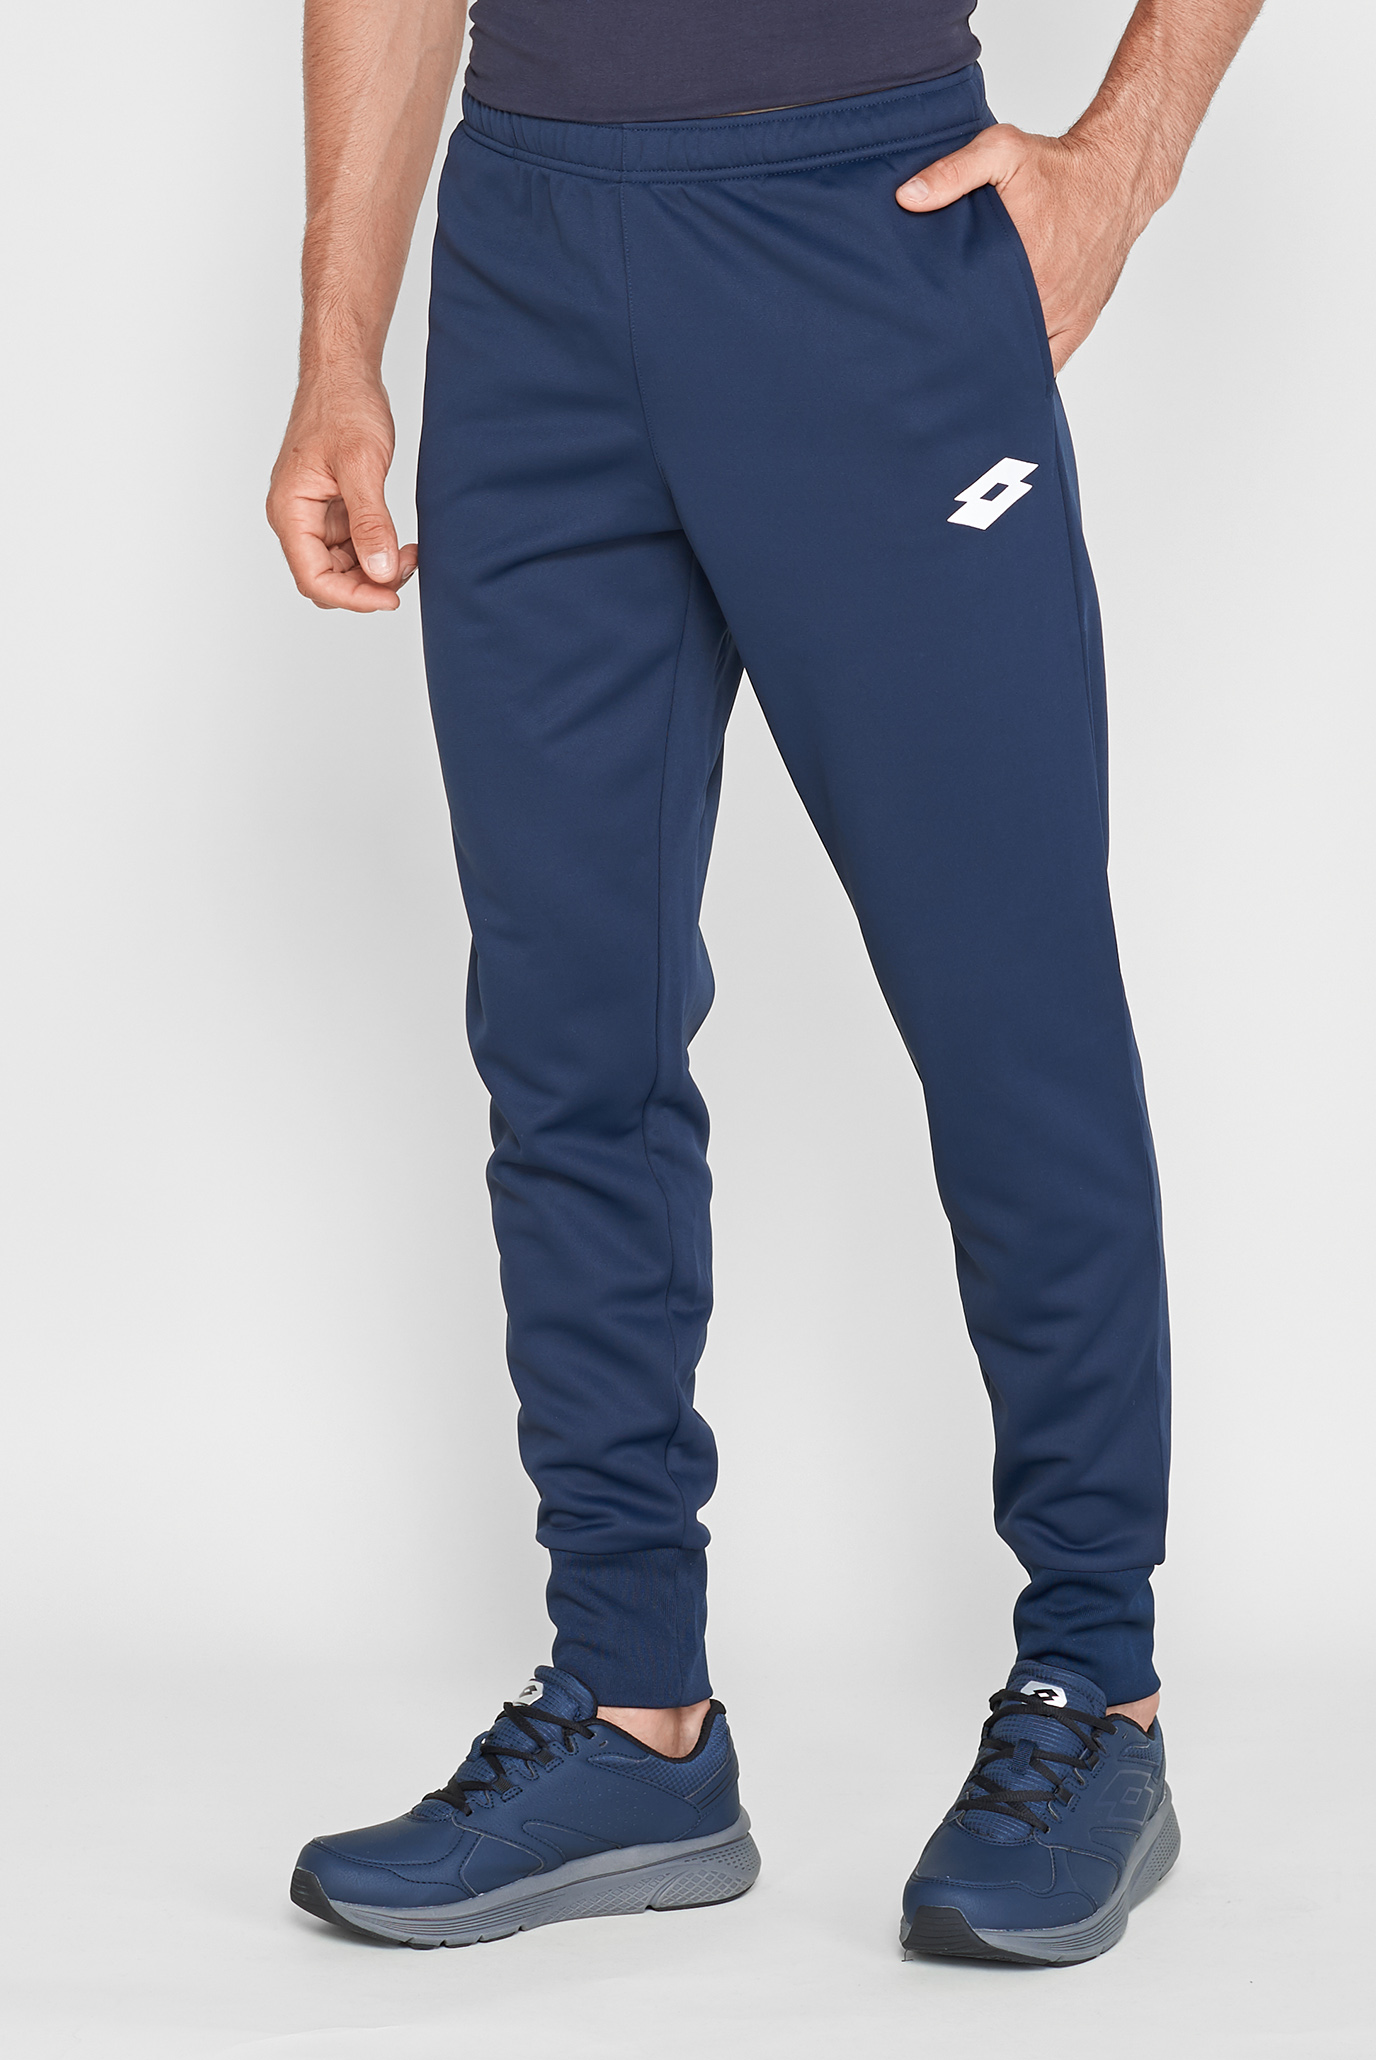 Чоловічі сині спортивні штани DELTA PANT RIB PL 1